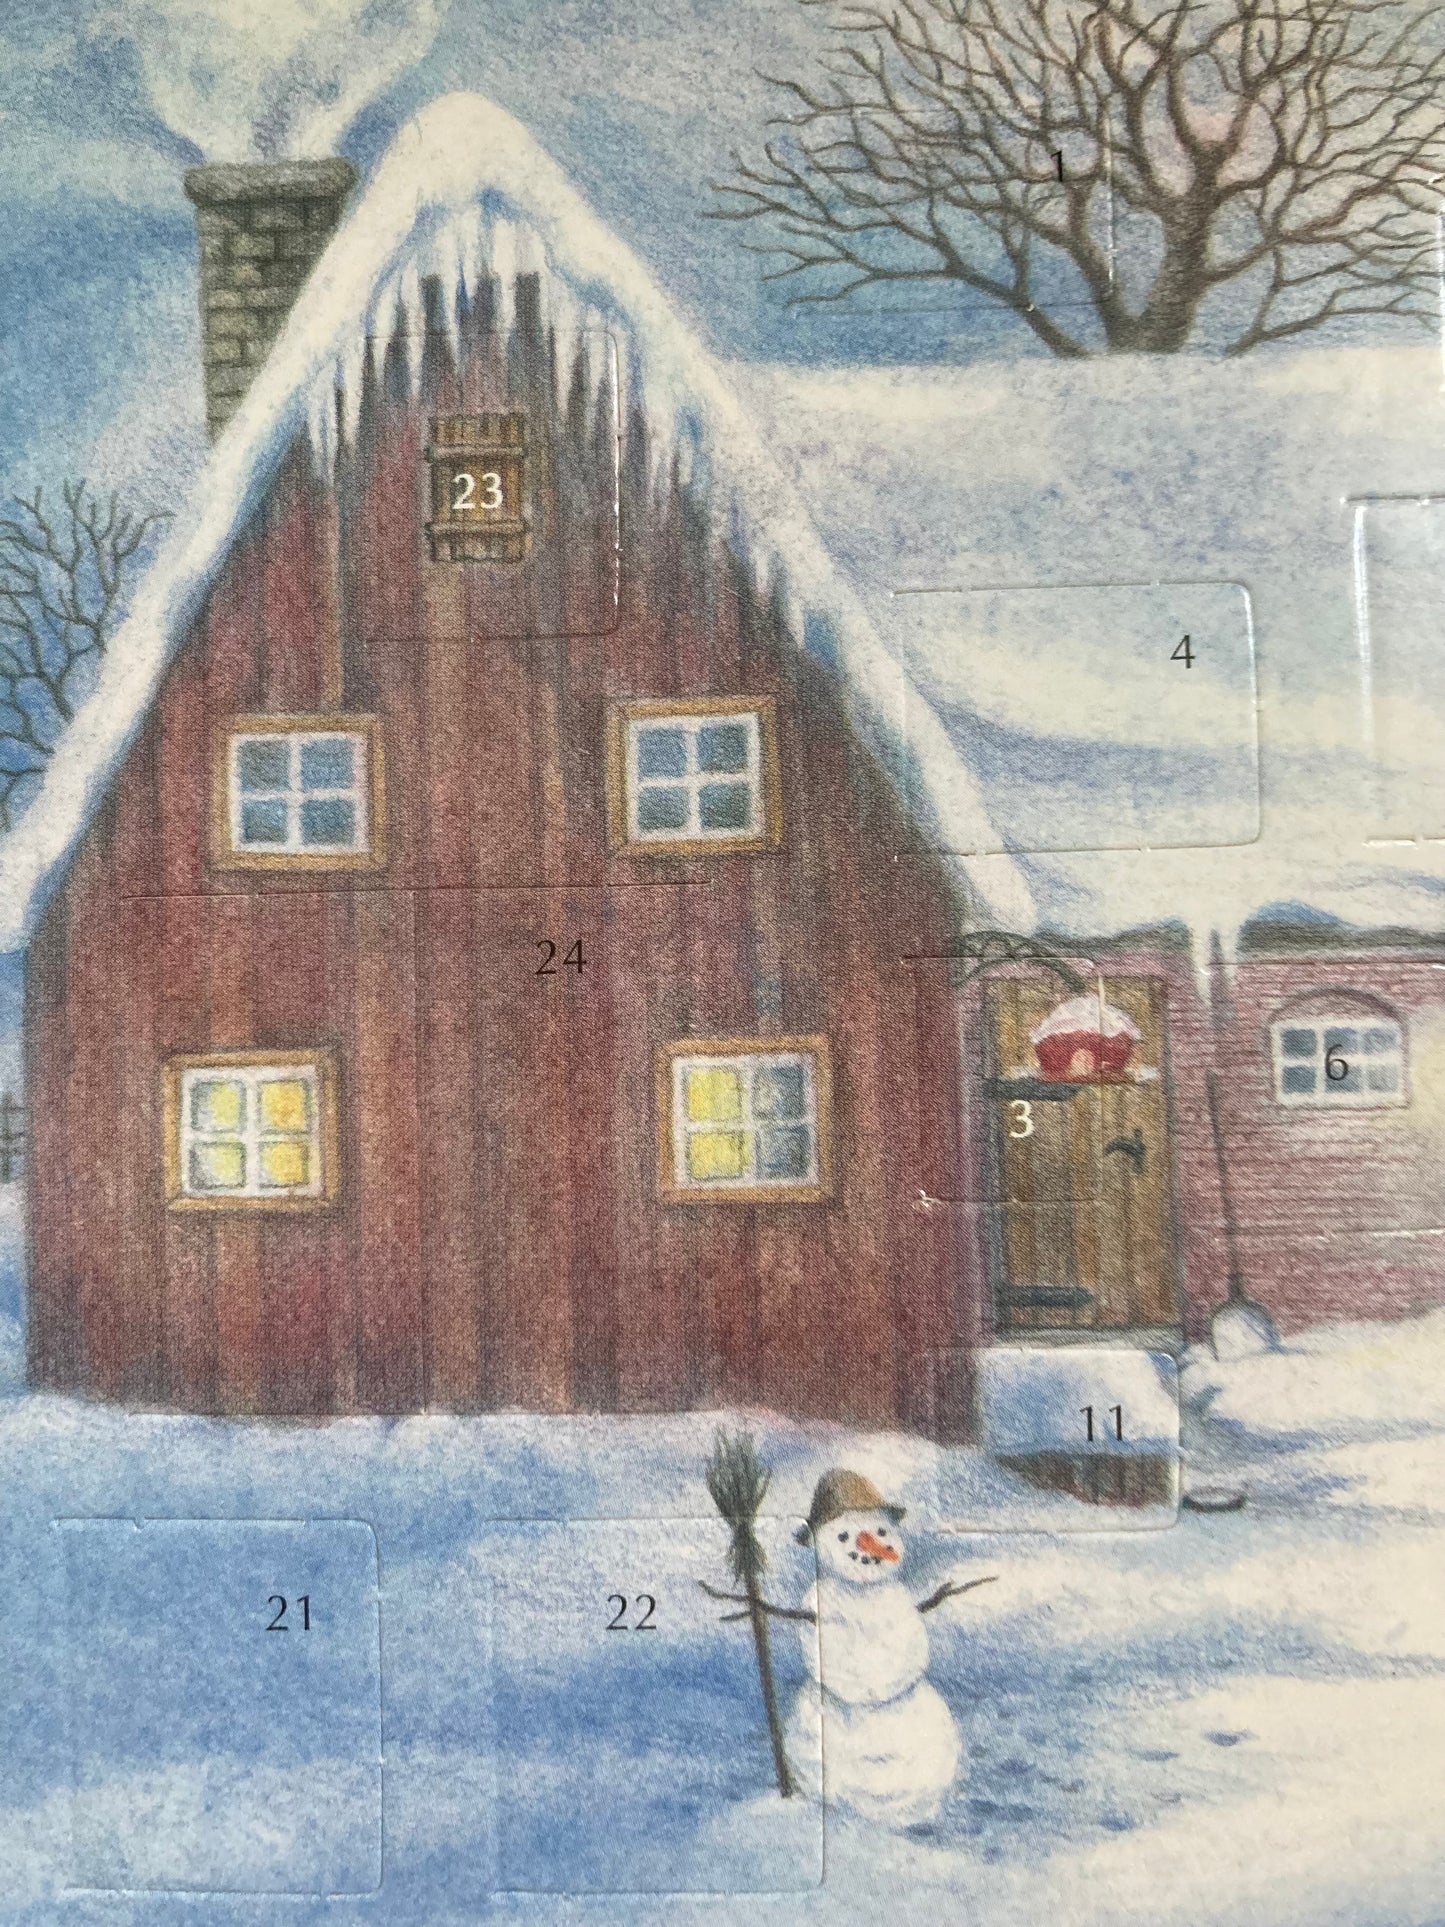 Advent Calendar Greeting Card - CHRISTMAS ON THE FARM